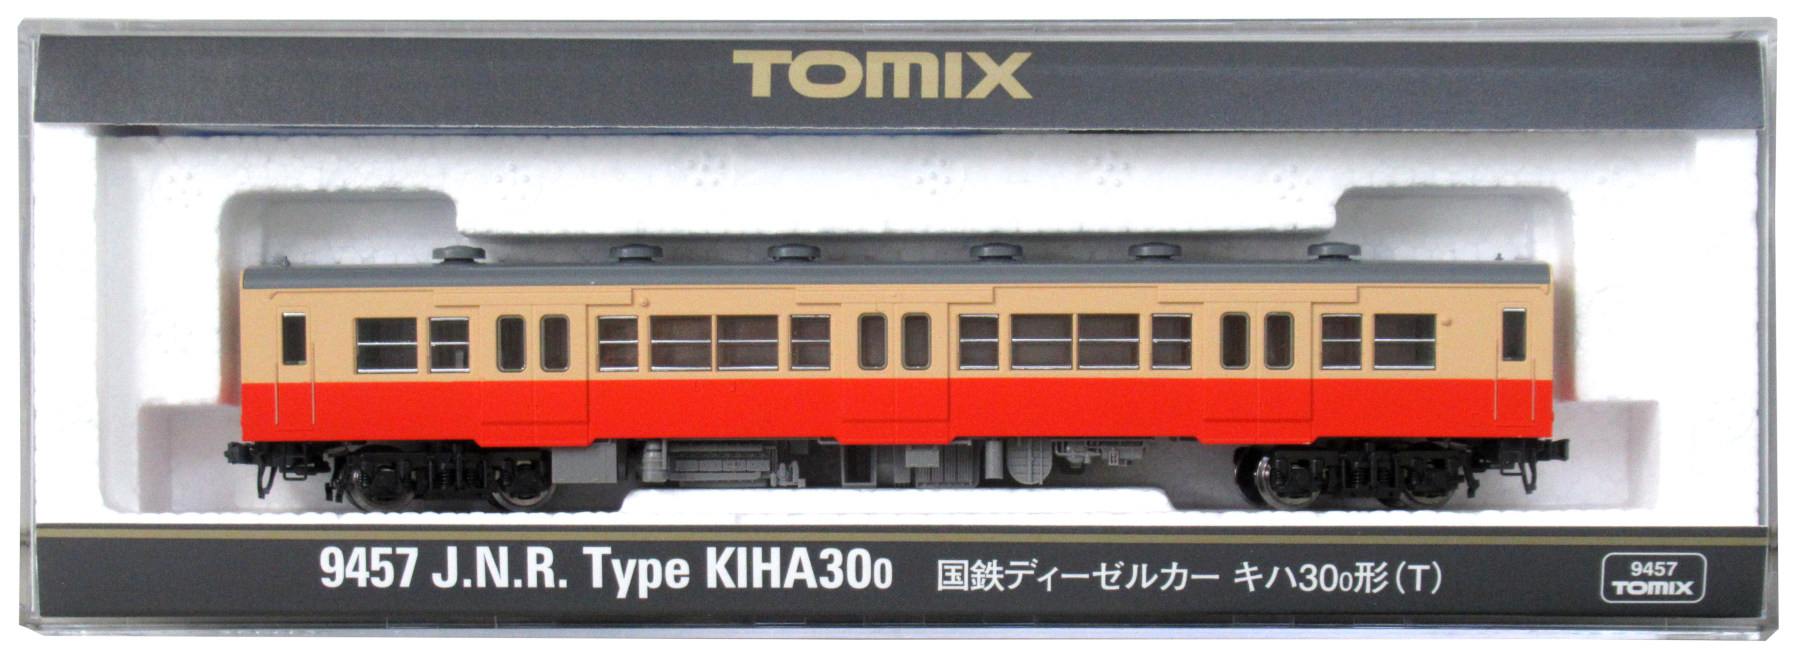 9457 国鉄 キハ30-0形(T)